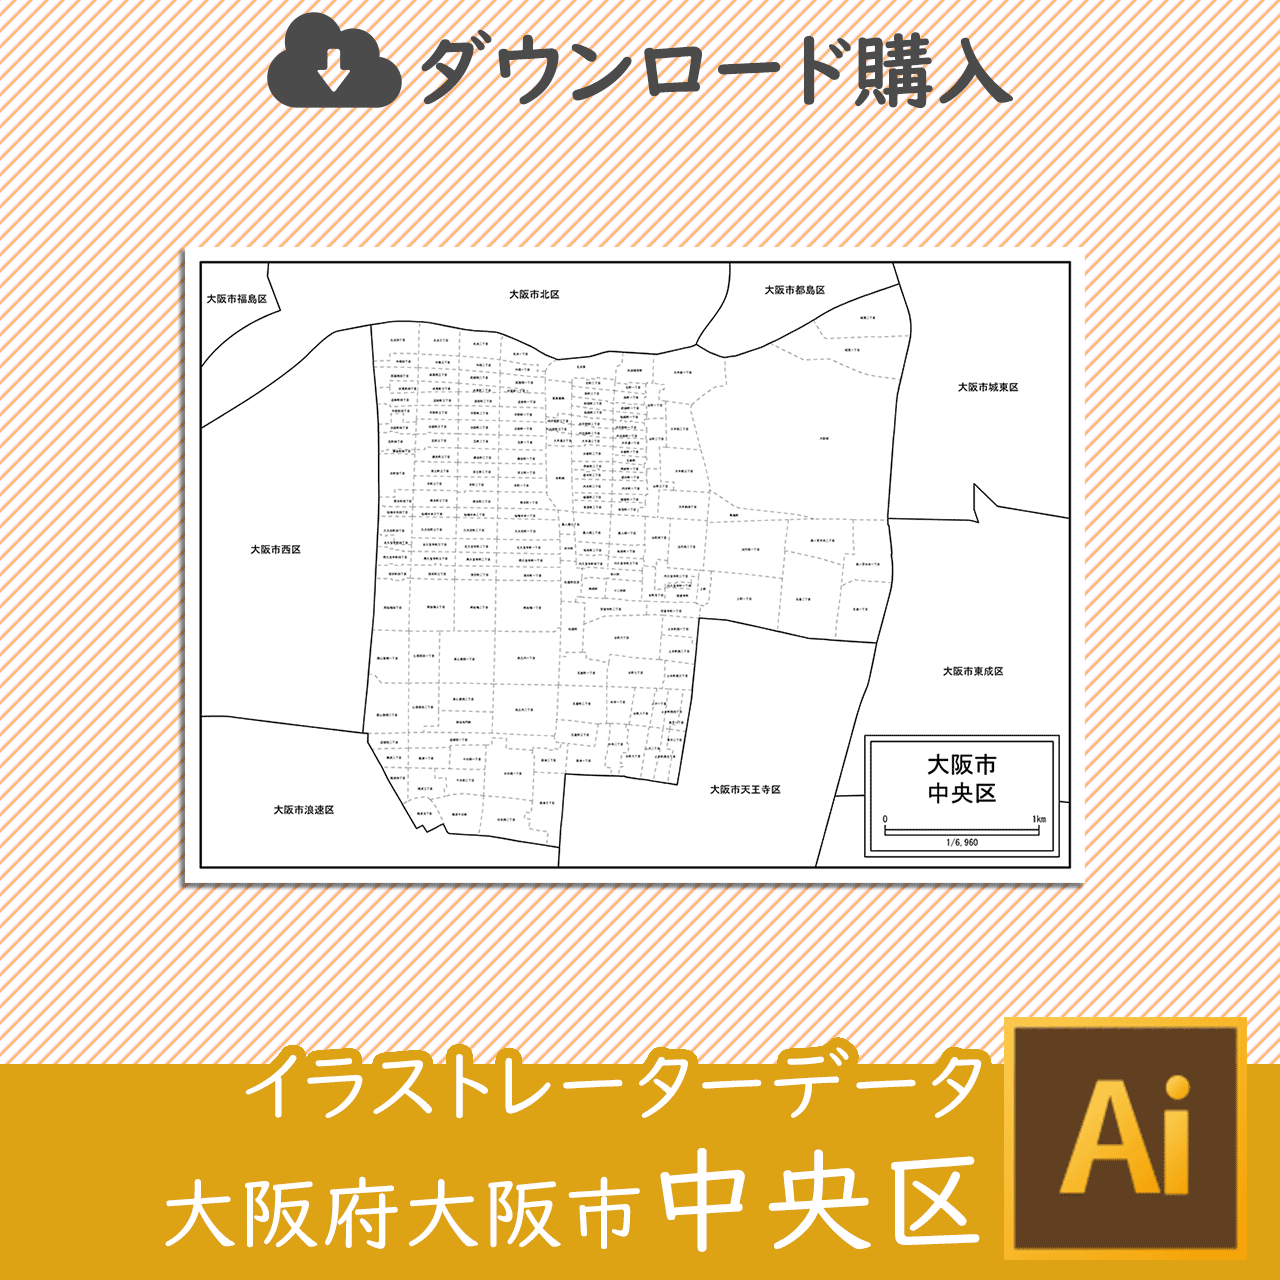 大阪市中央区のaiデータのサムネイル画像